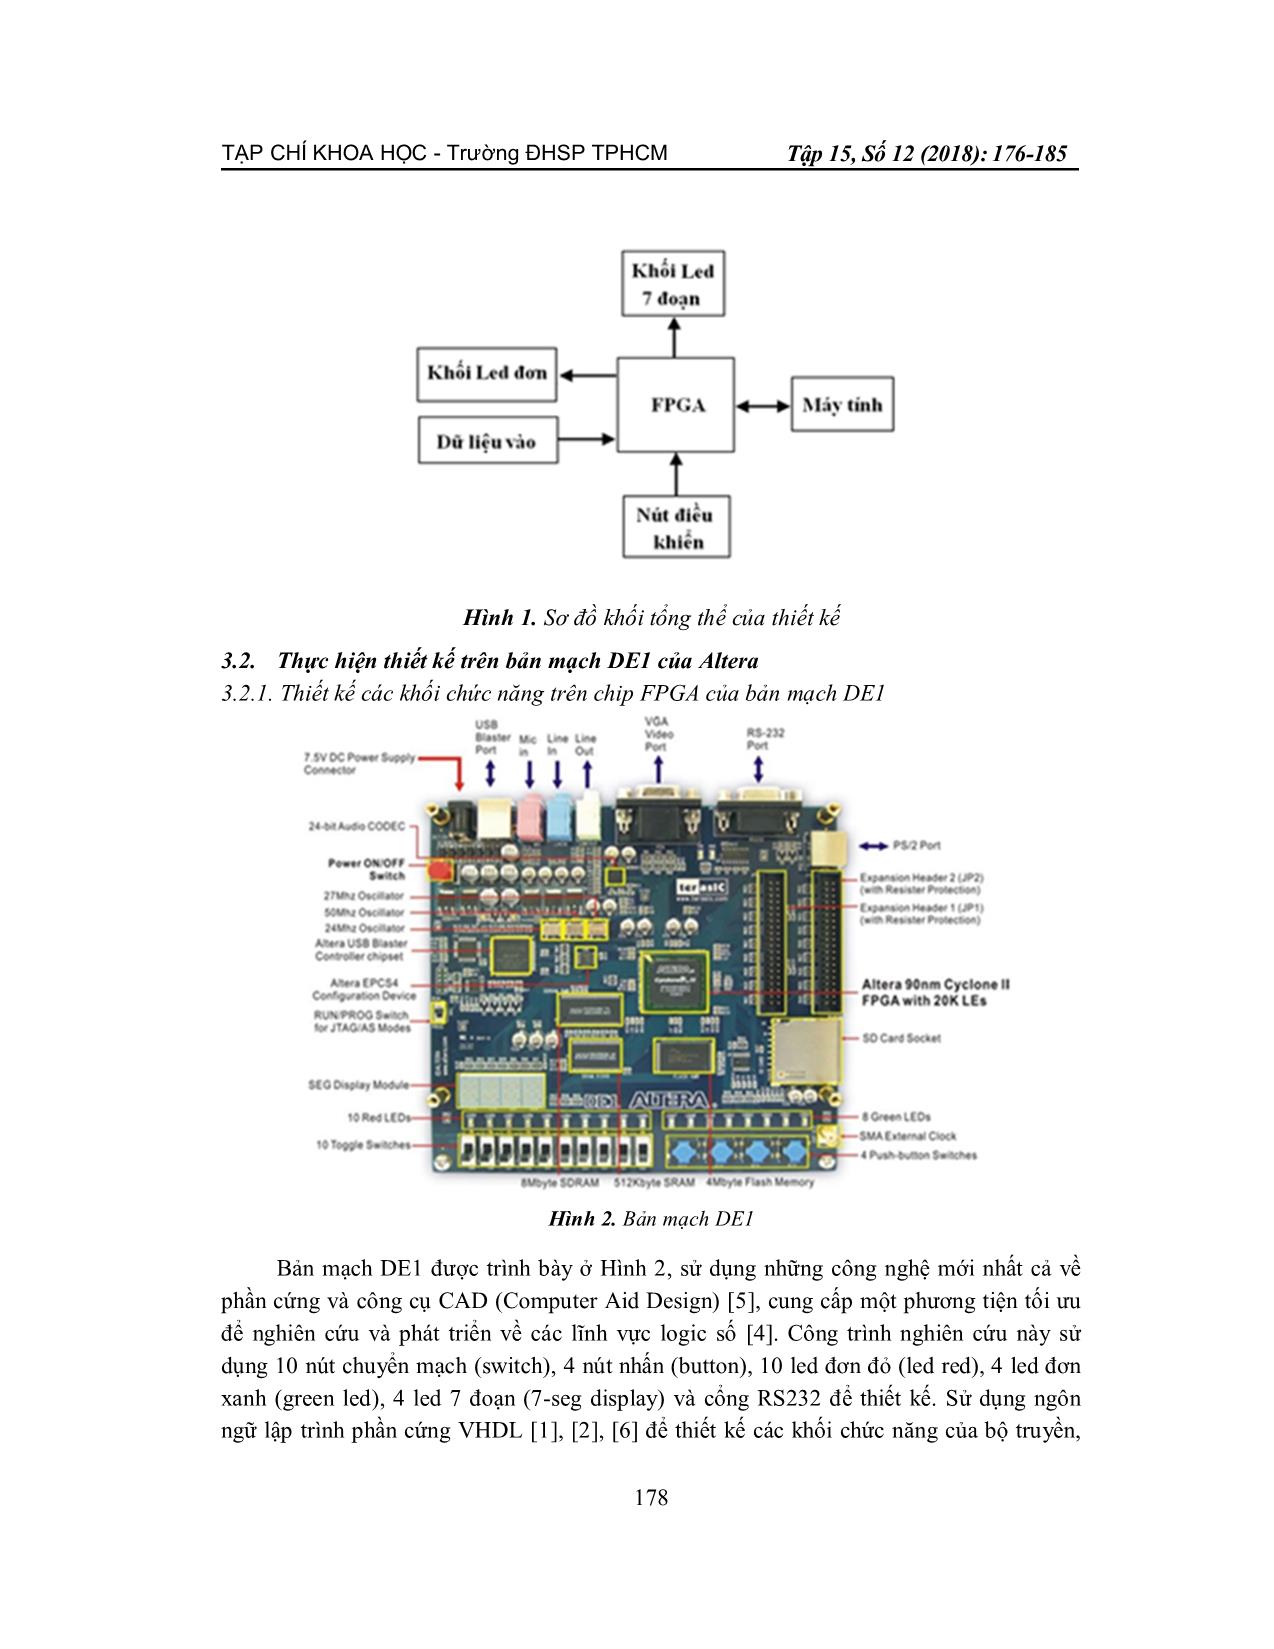 Ứng dụng công nghệ FPGA để thiết kế bộ truyền, nhận dữ liệu giao tiếp với máy tính trên thiết bị DE1 qua đường truyền UART trang 3